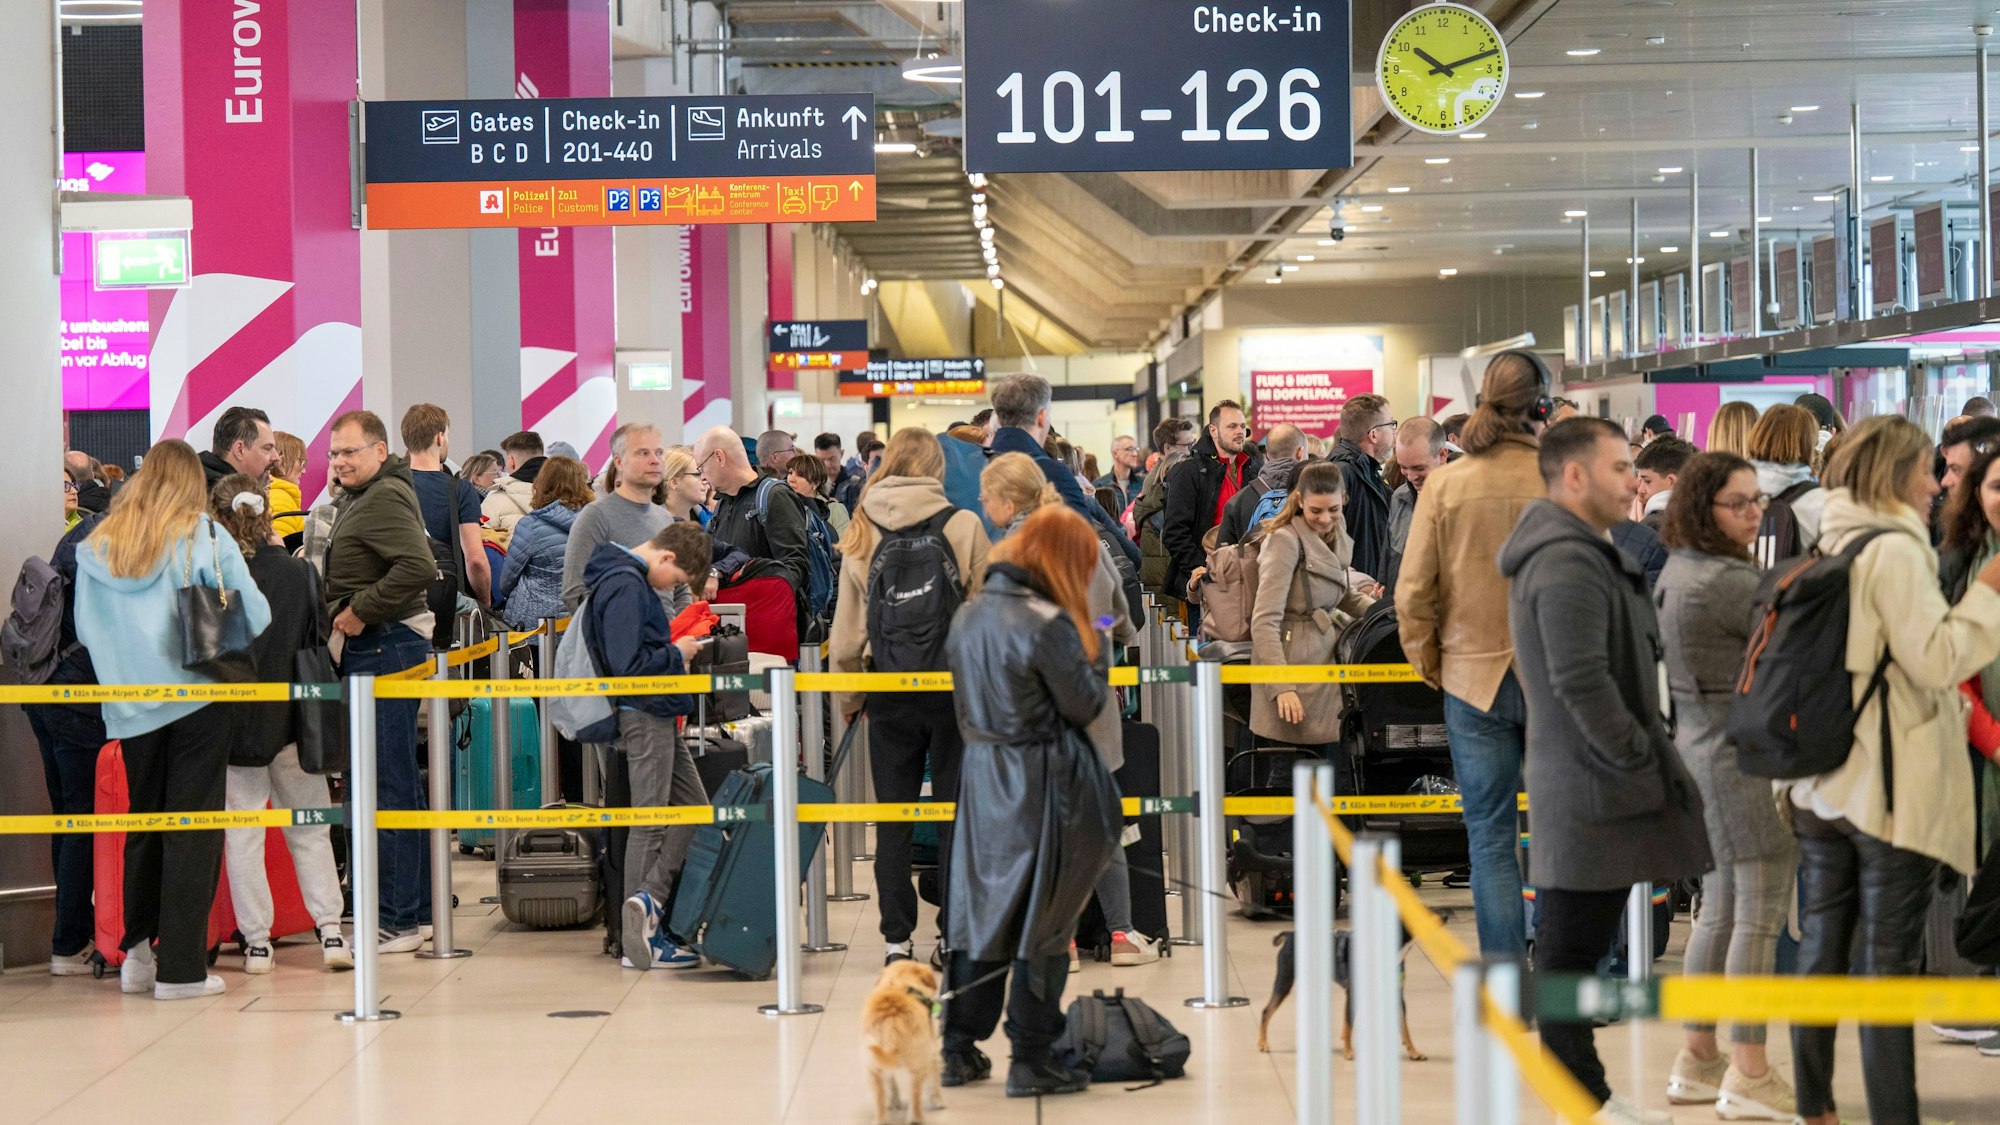 Foto von Reisenden am Flughafen Köln/Bonn, die am Check-in warten.